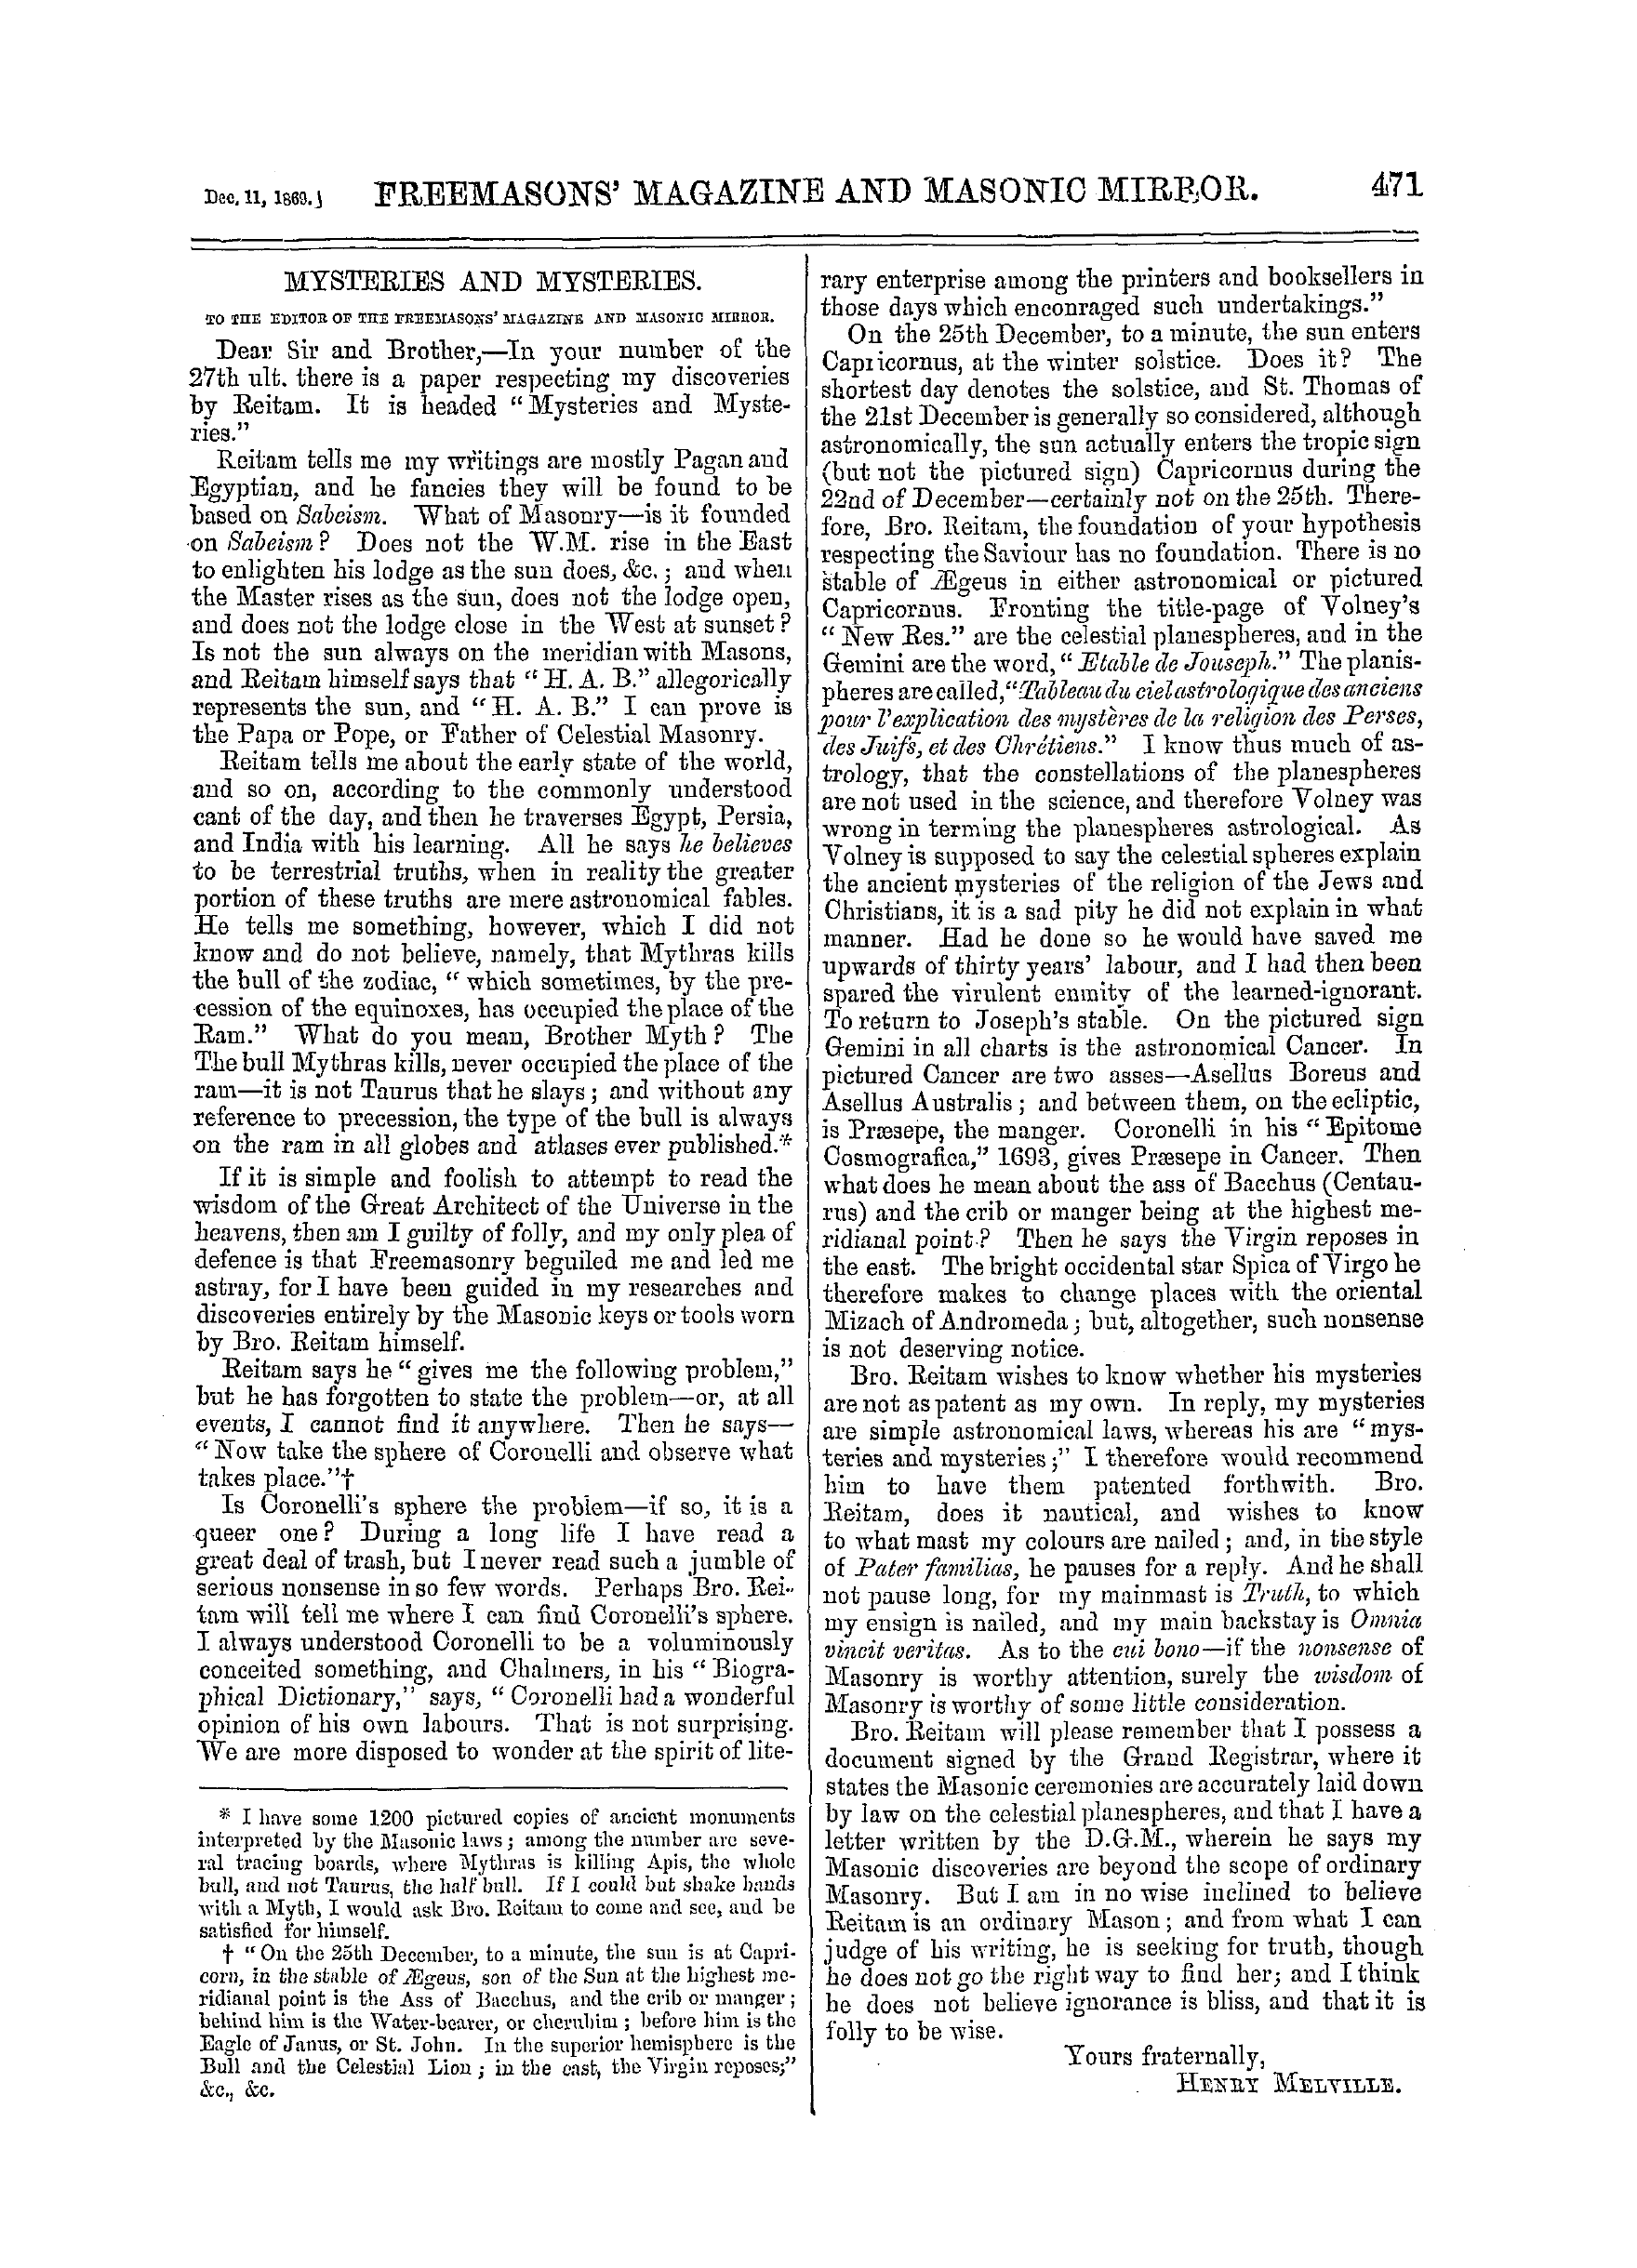 The Freemasons' Monthly Magazine: 1869-12-11: 11